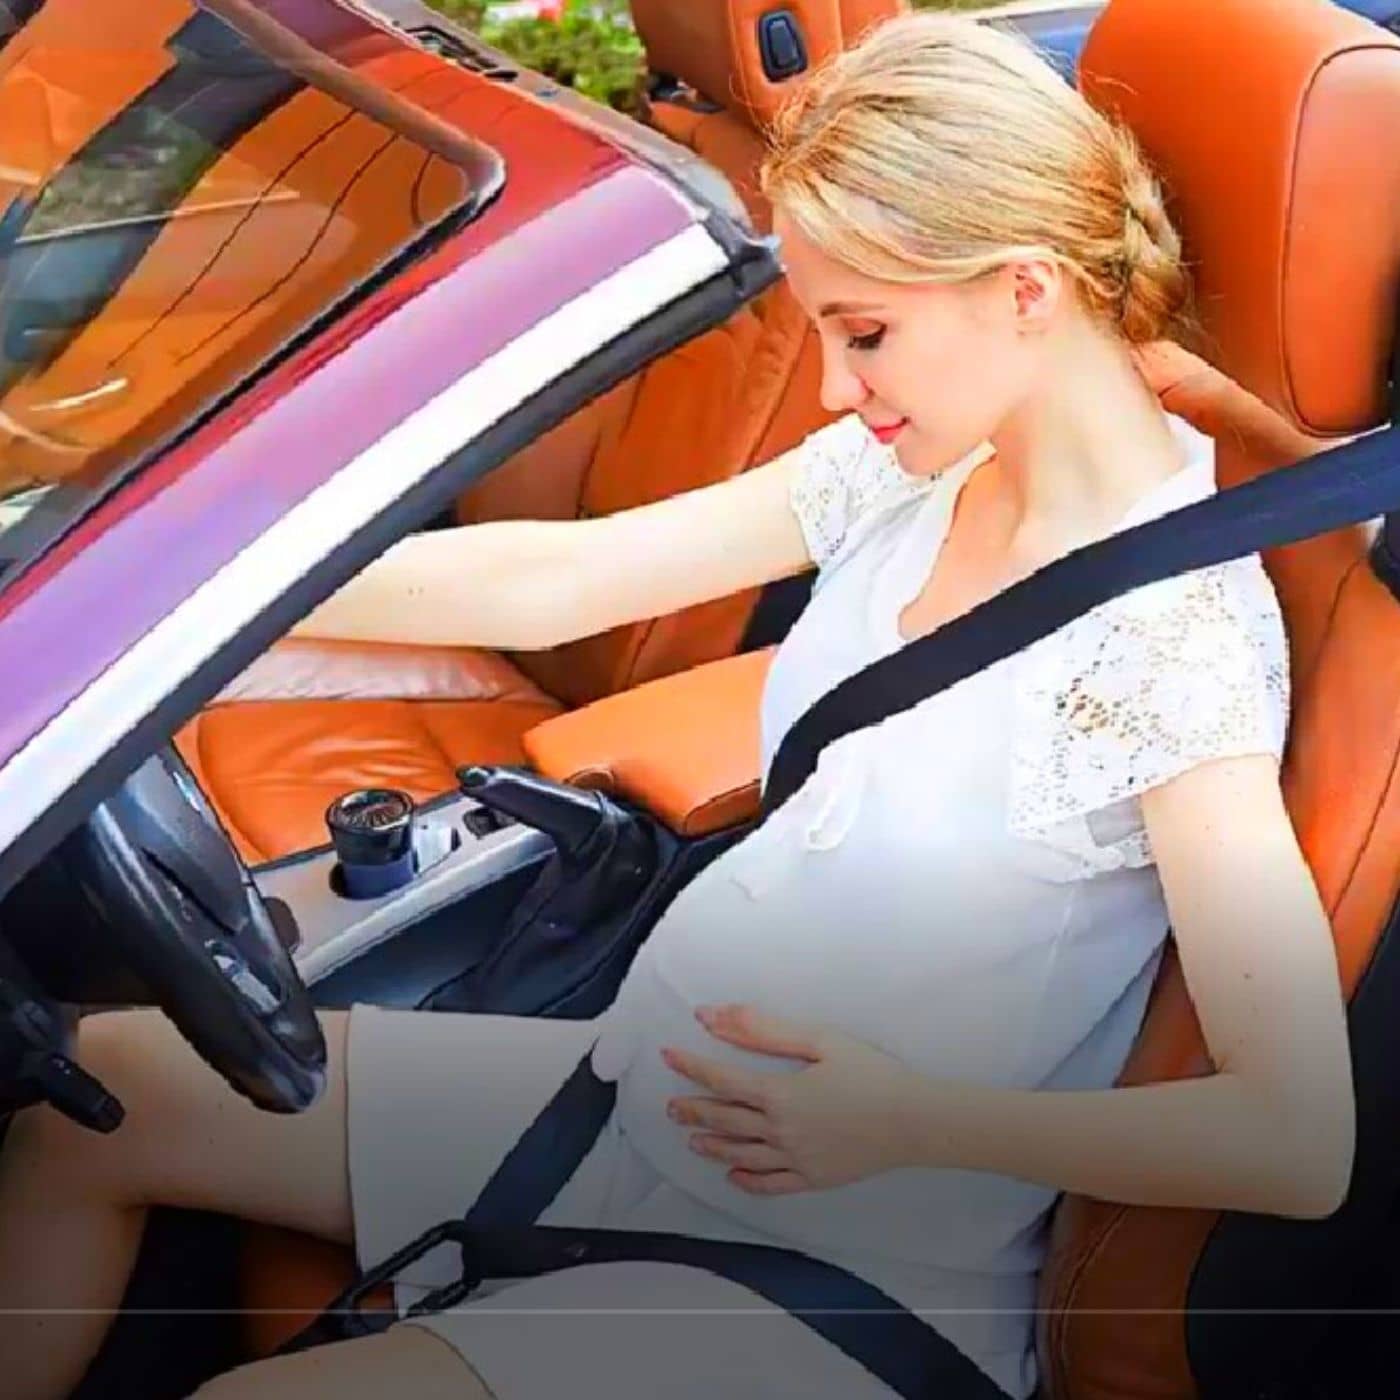 ComfortBelt™ ajusteur de ceinture de siège de voiture pour femmes ence –  GROSSESSE ALLEGRESSE